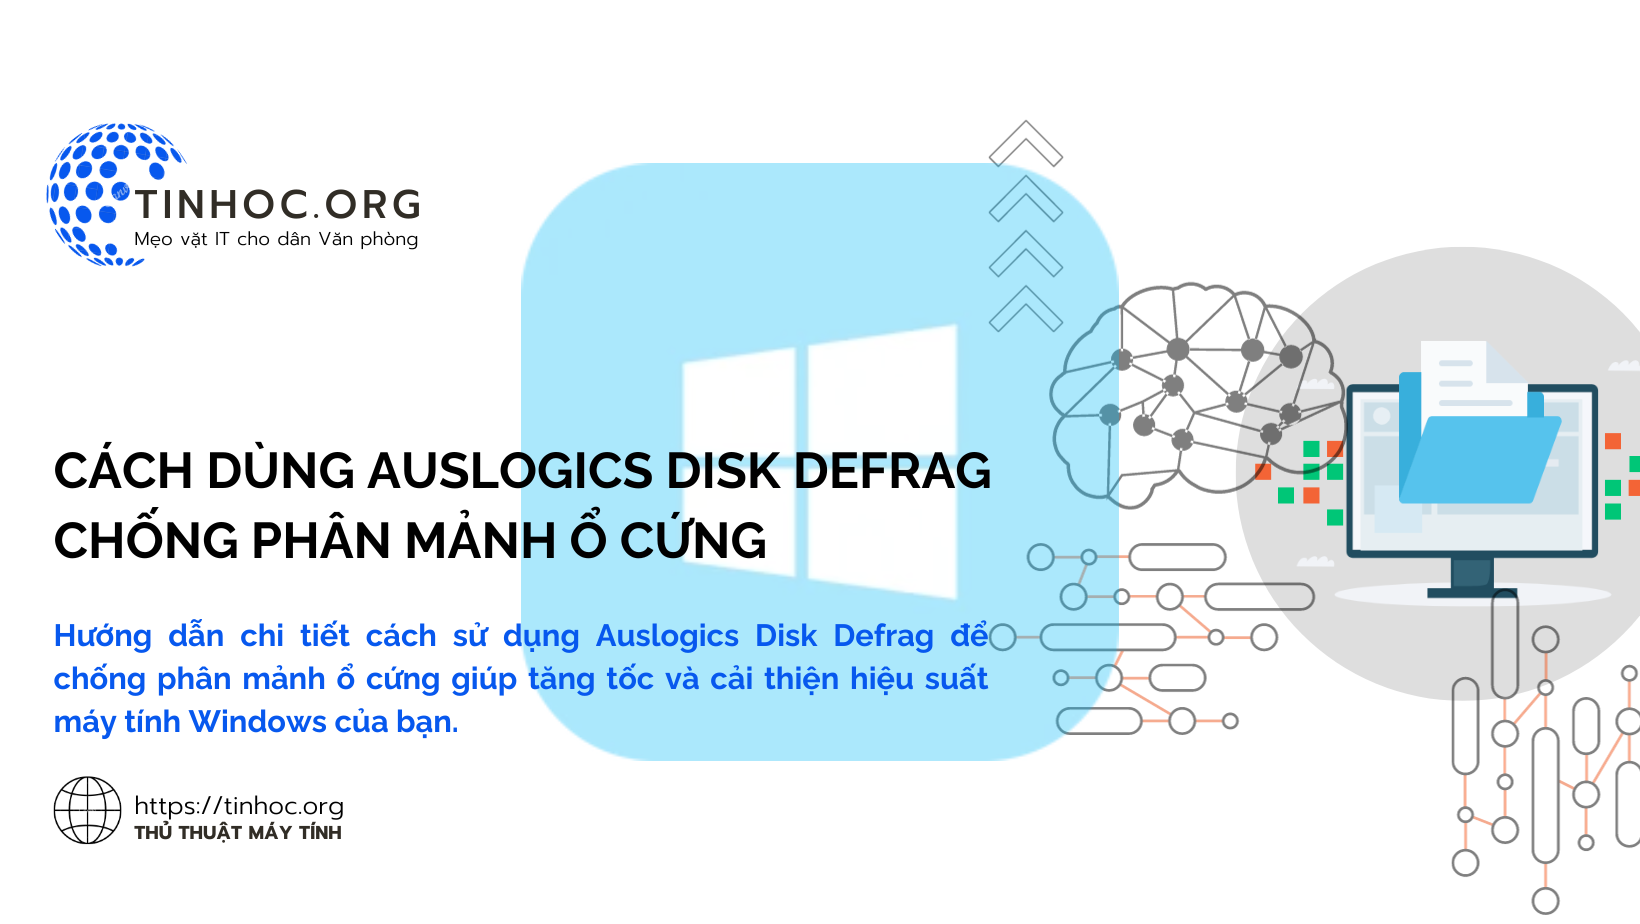 Cách dùng Auslogics Disk Defrag chống phân mảnh ổ cứng